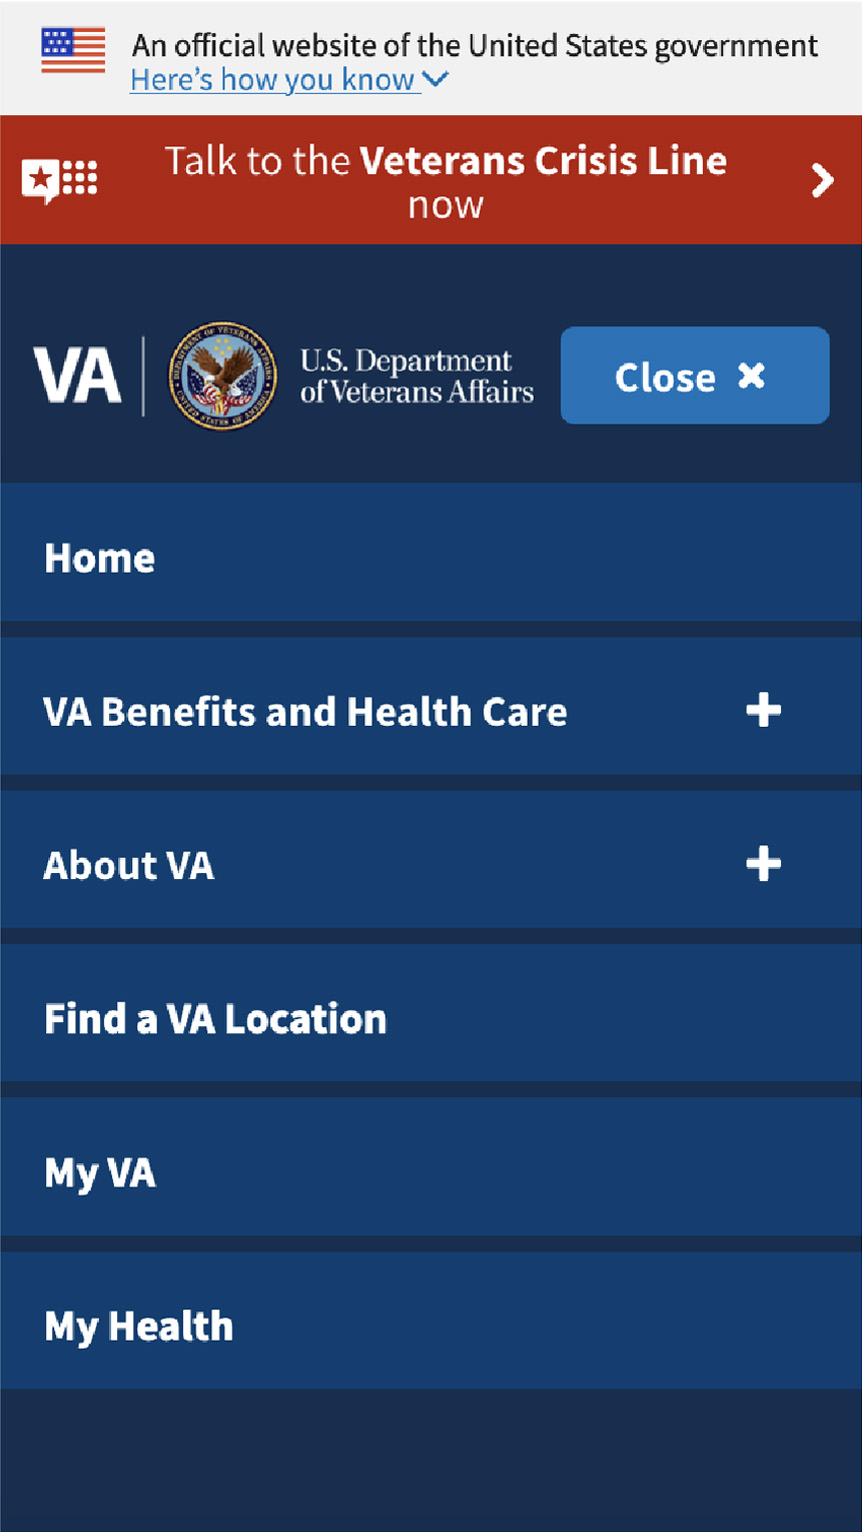 Previous VA mobile menu exposed